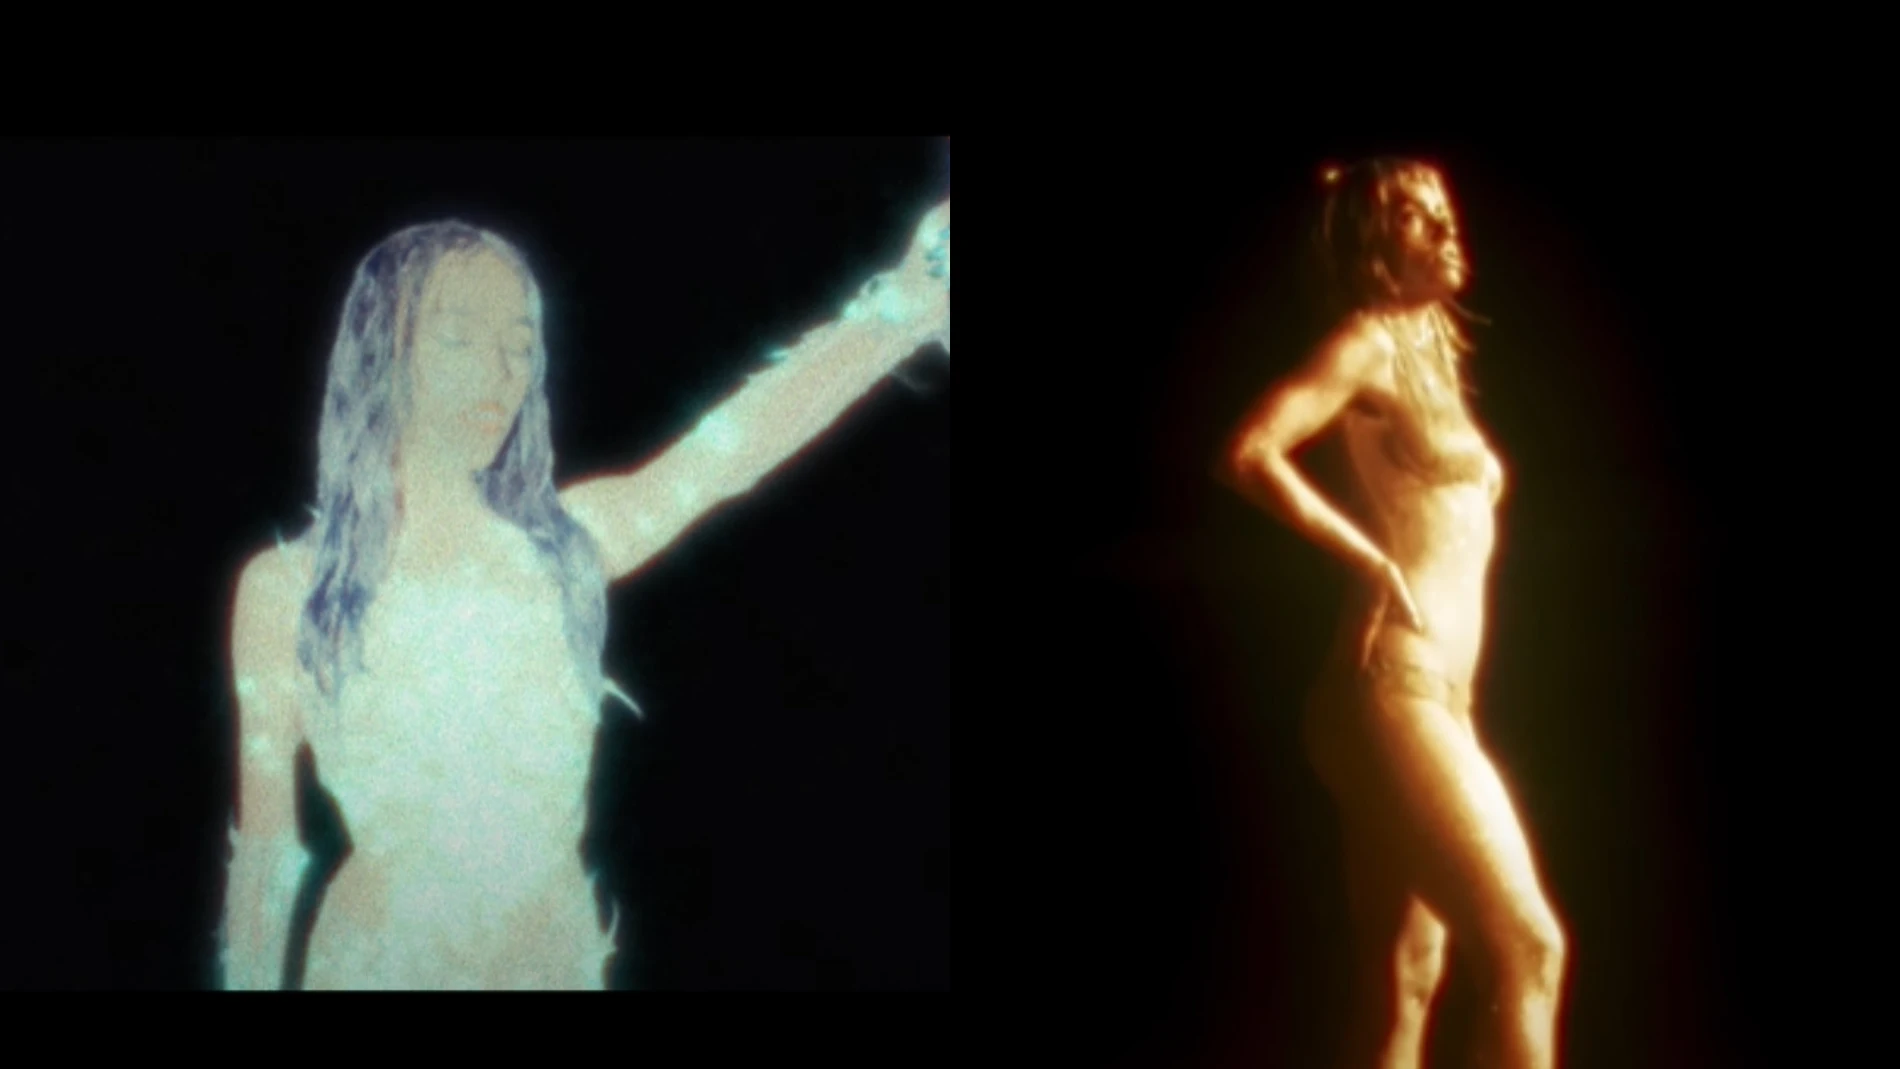 El parecido razonable entre el tráiler de 'Childstar', el nuevo disco de Danna Paola, y un videoclip de Lali Espósito